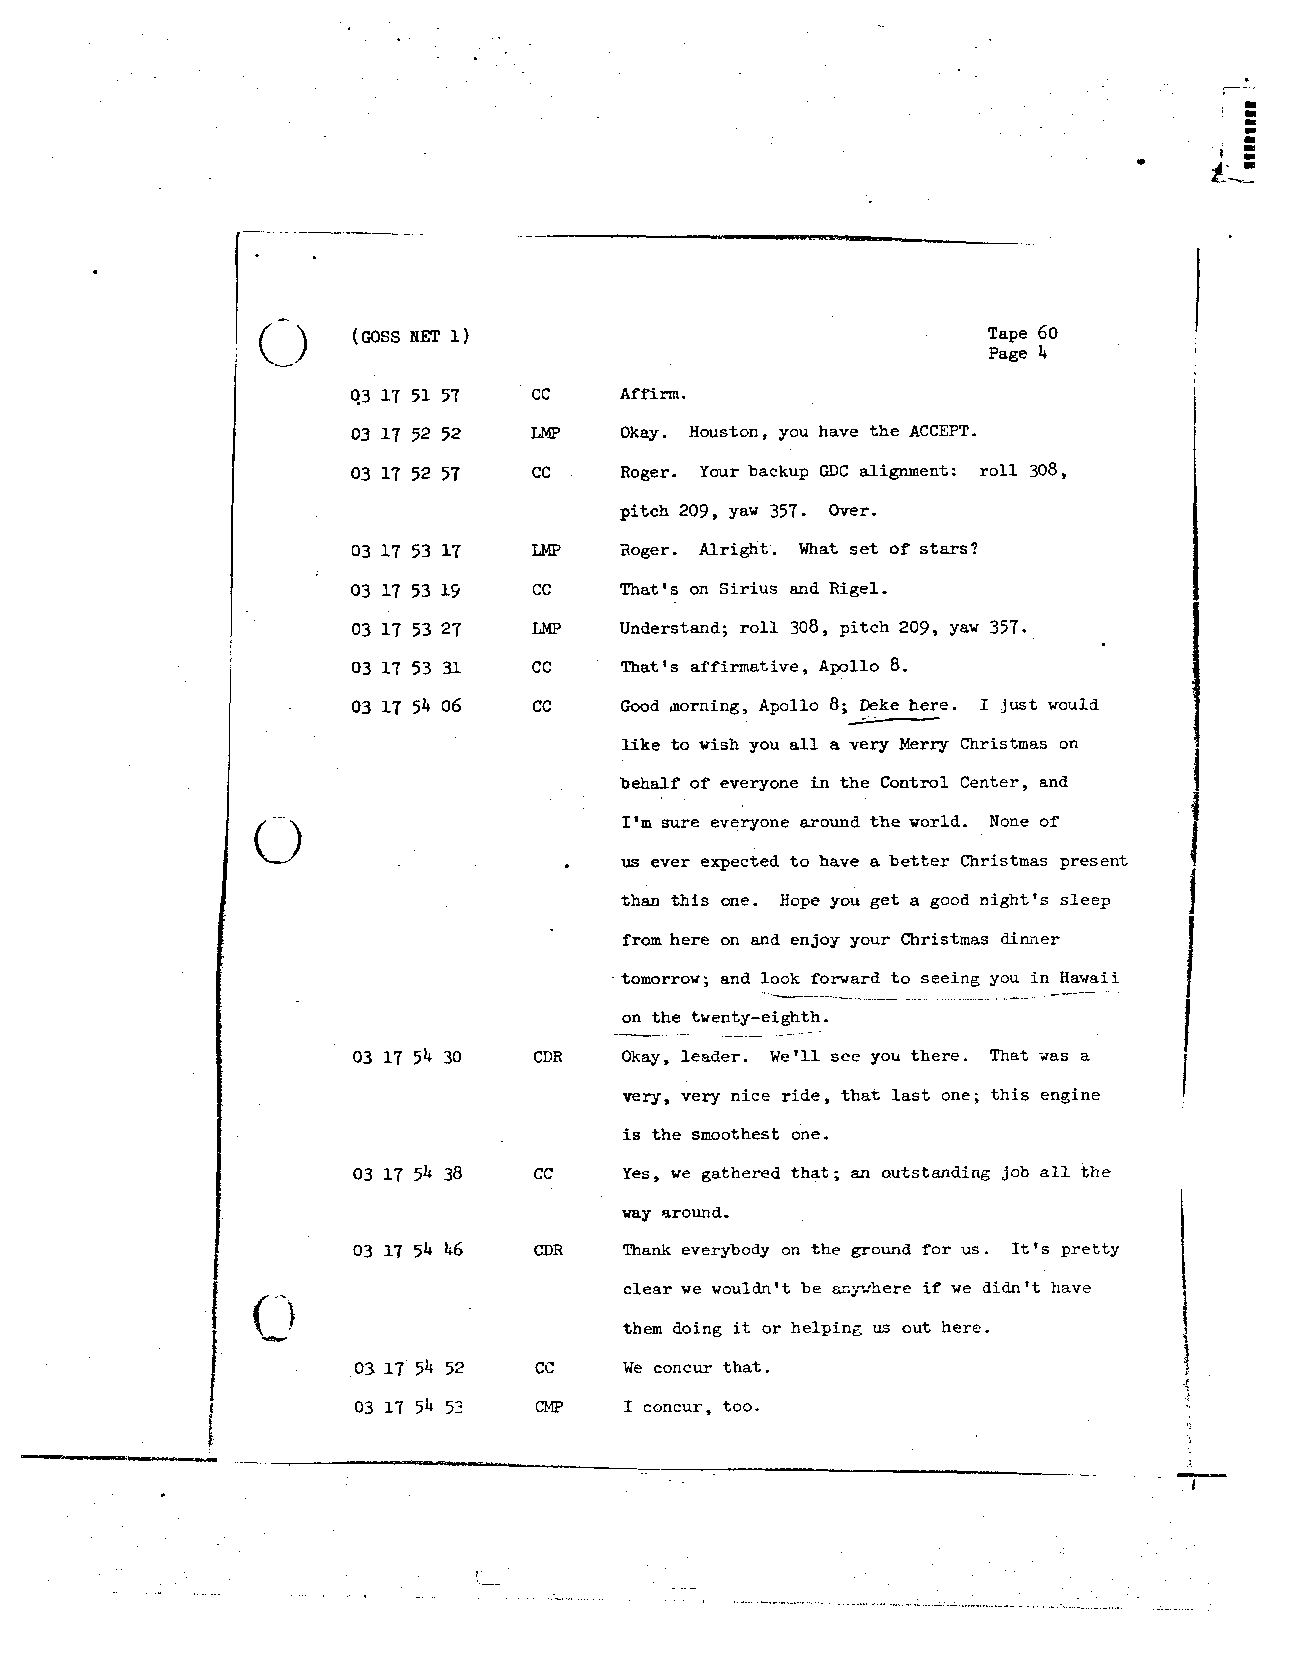 Page 479 of Apollo 8’s original transcript